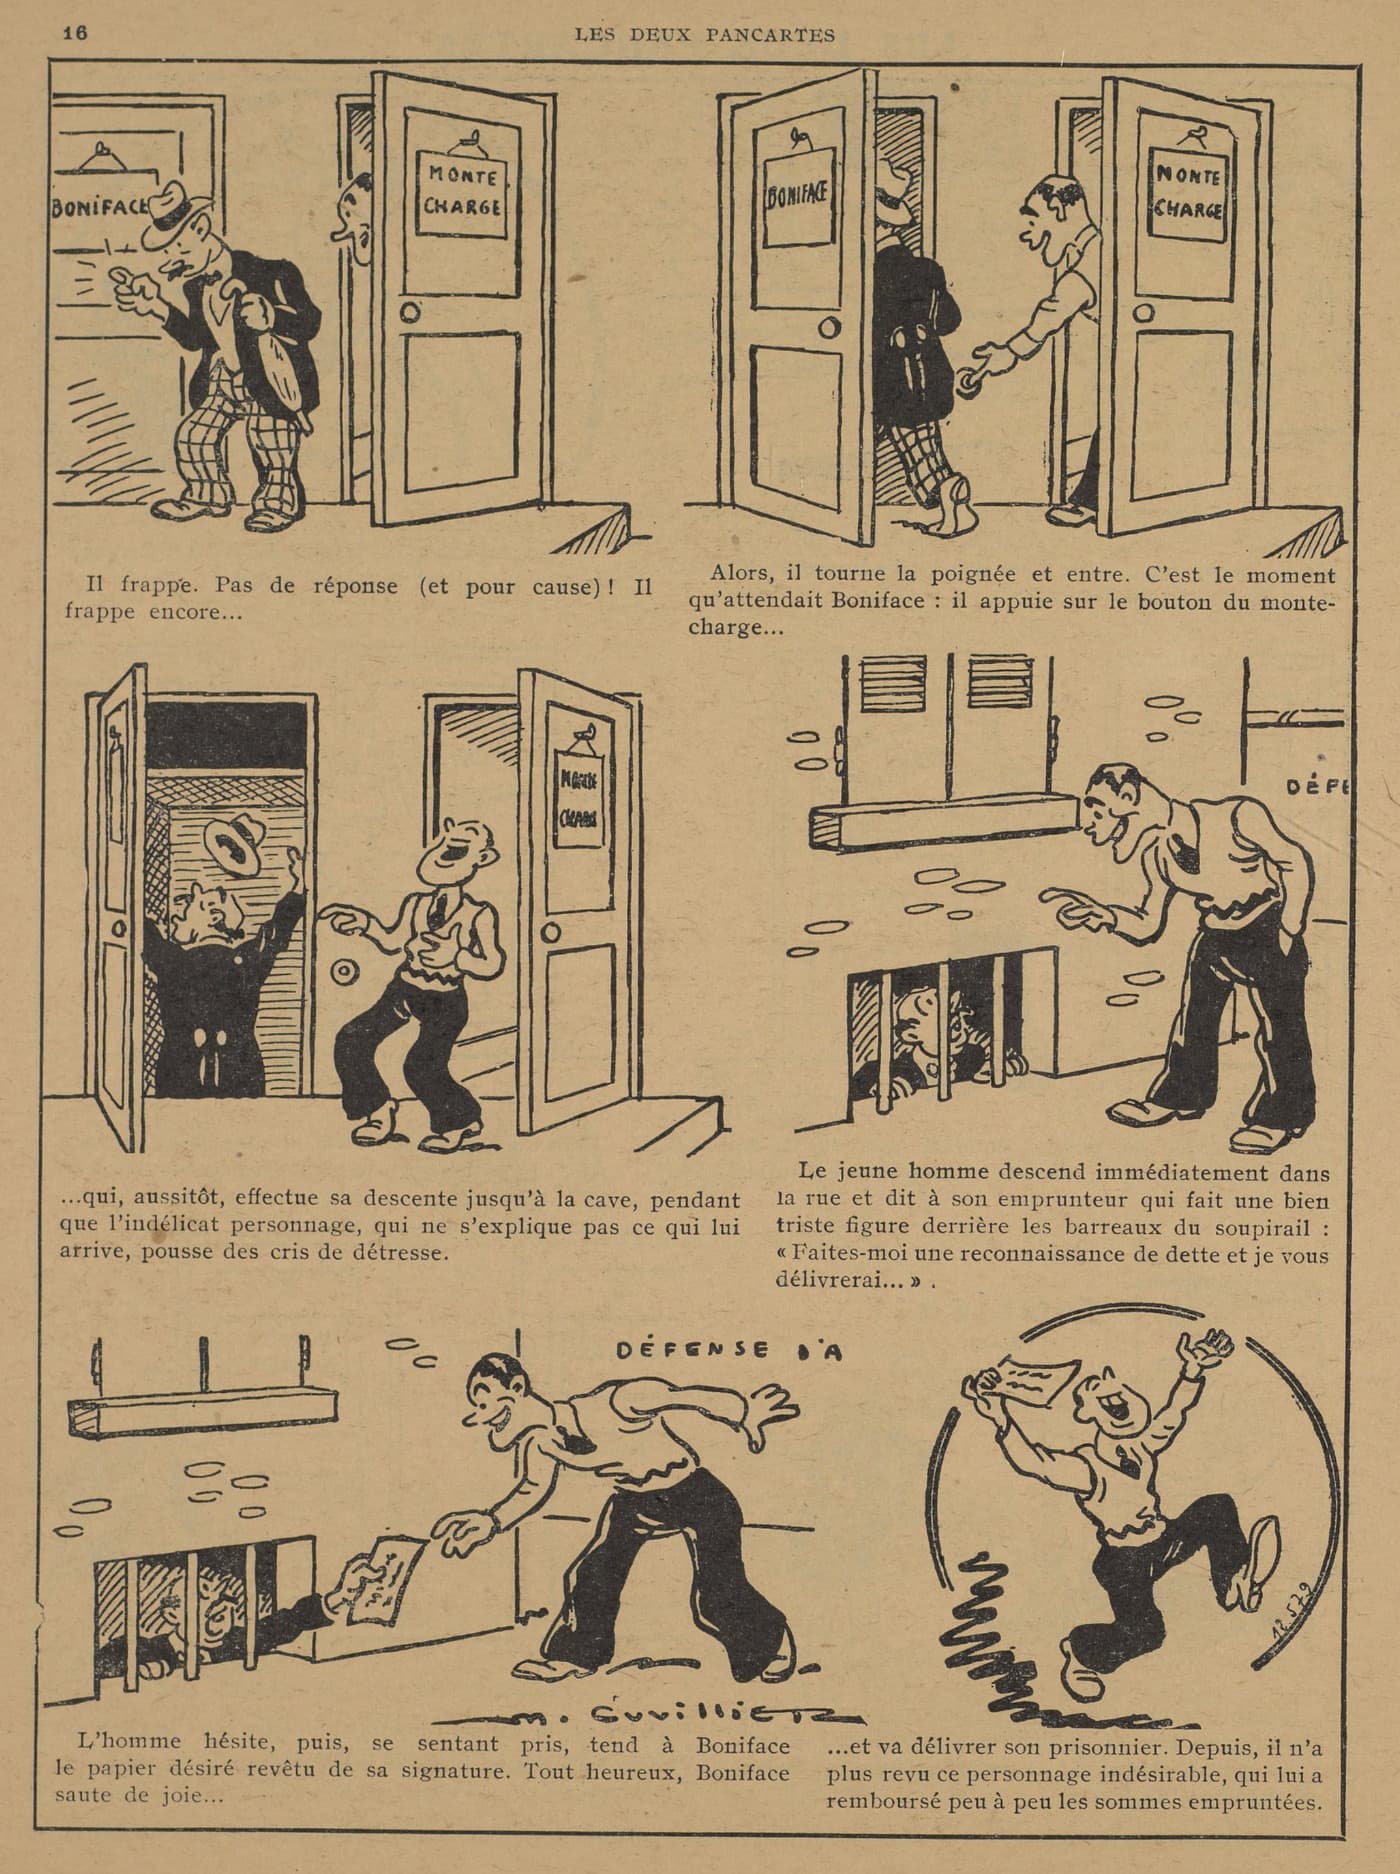 Guignol 1935 - n°4 - page 16 - Les deux pancartes - 27 janvier 1935